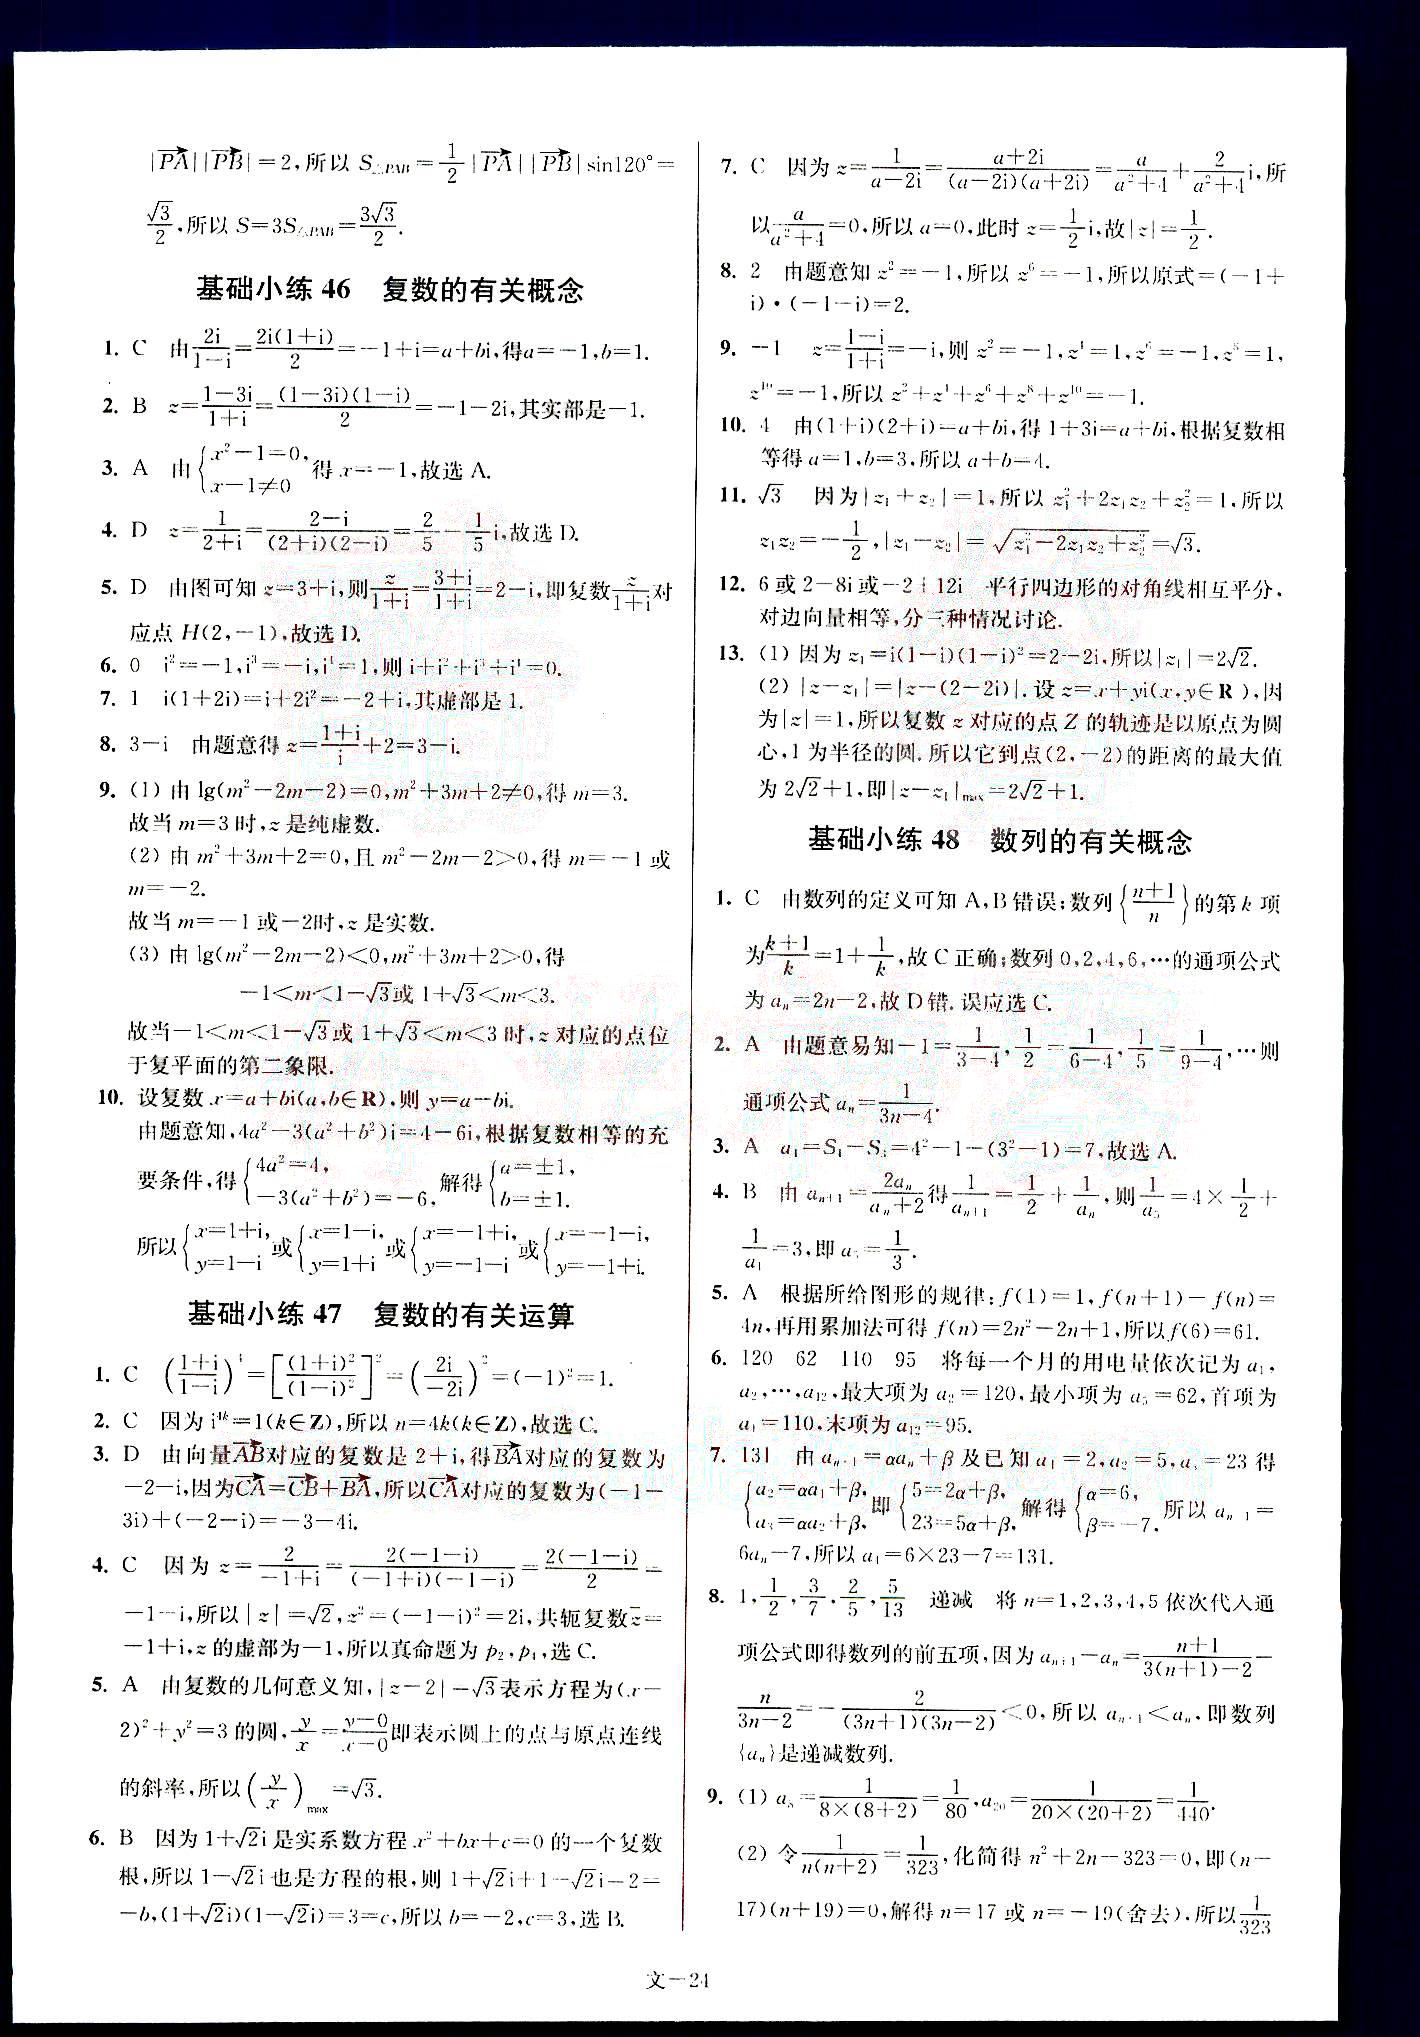 小题狂做-高考数学-文科-最基础篇南京大学出版社 第5部分 [4]